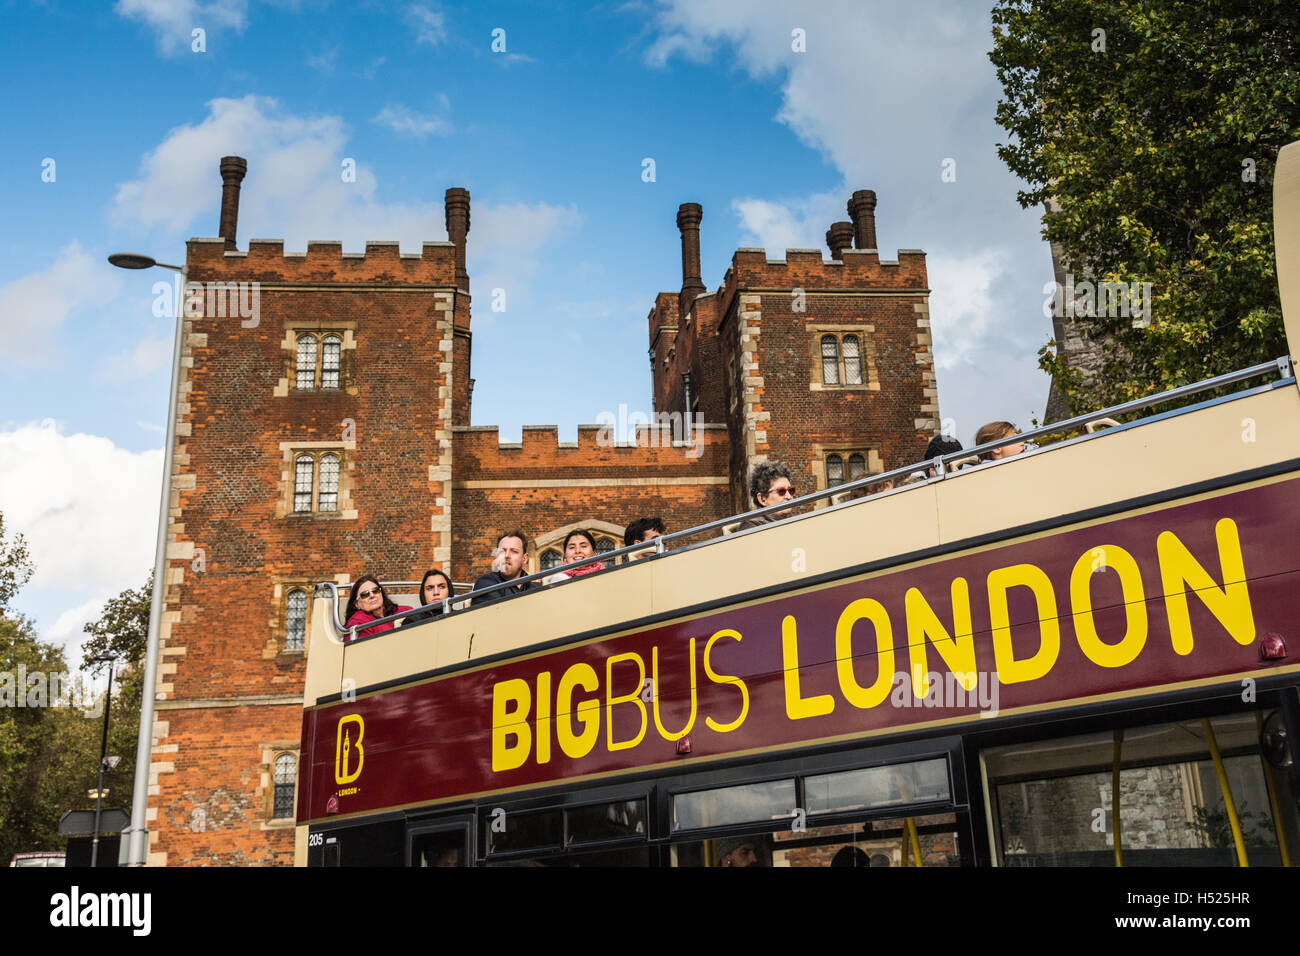 Un bus touristique Big bus londonien passe devant Lambeth Palace, la résidence officielle de l'archevêque de Canterbury, Londres, Angleterre, Royaume-Uni Banque D'Images